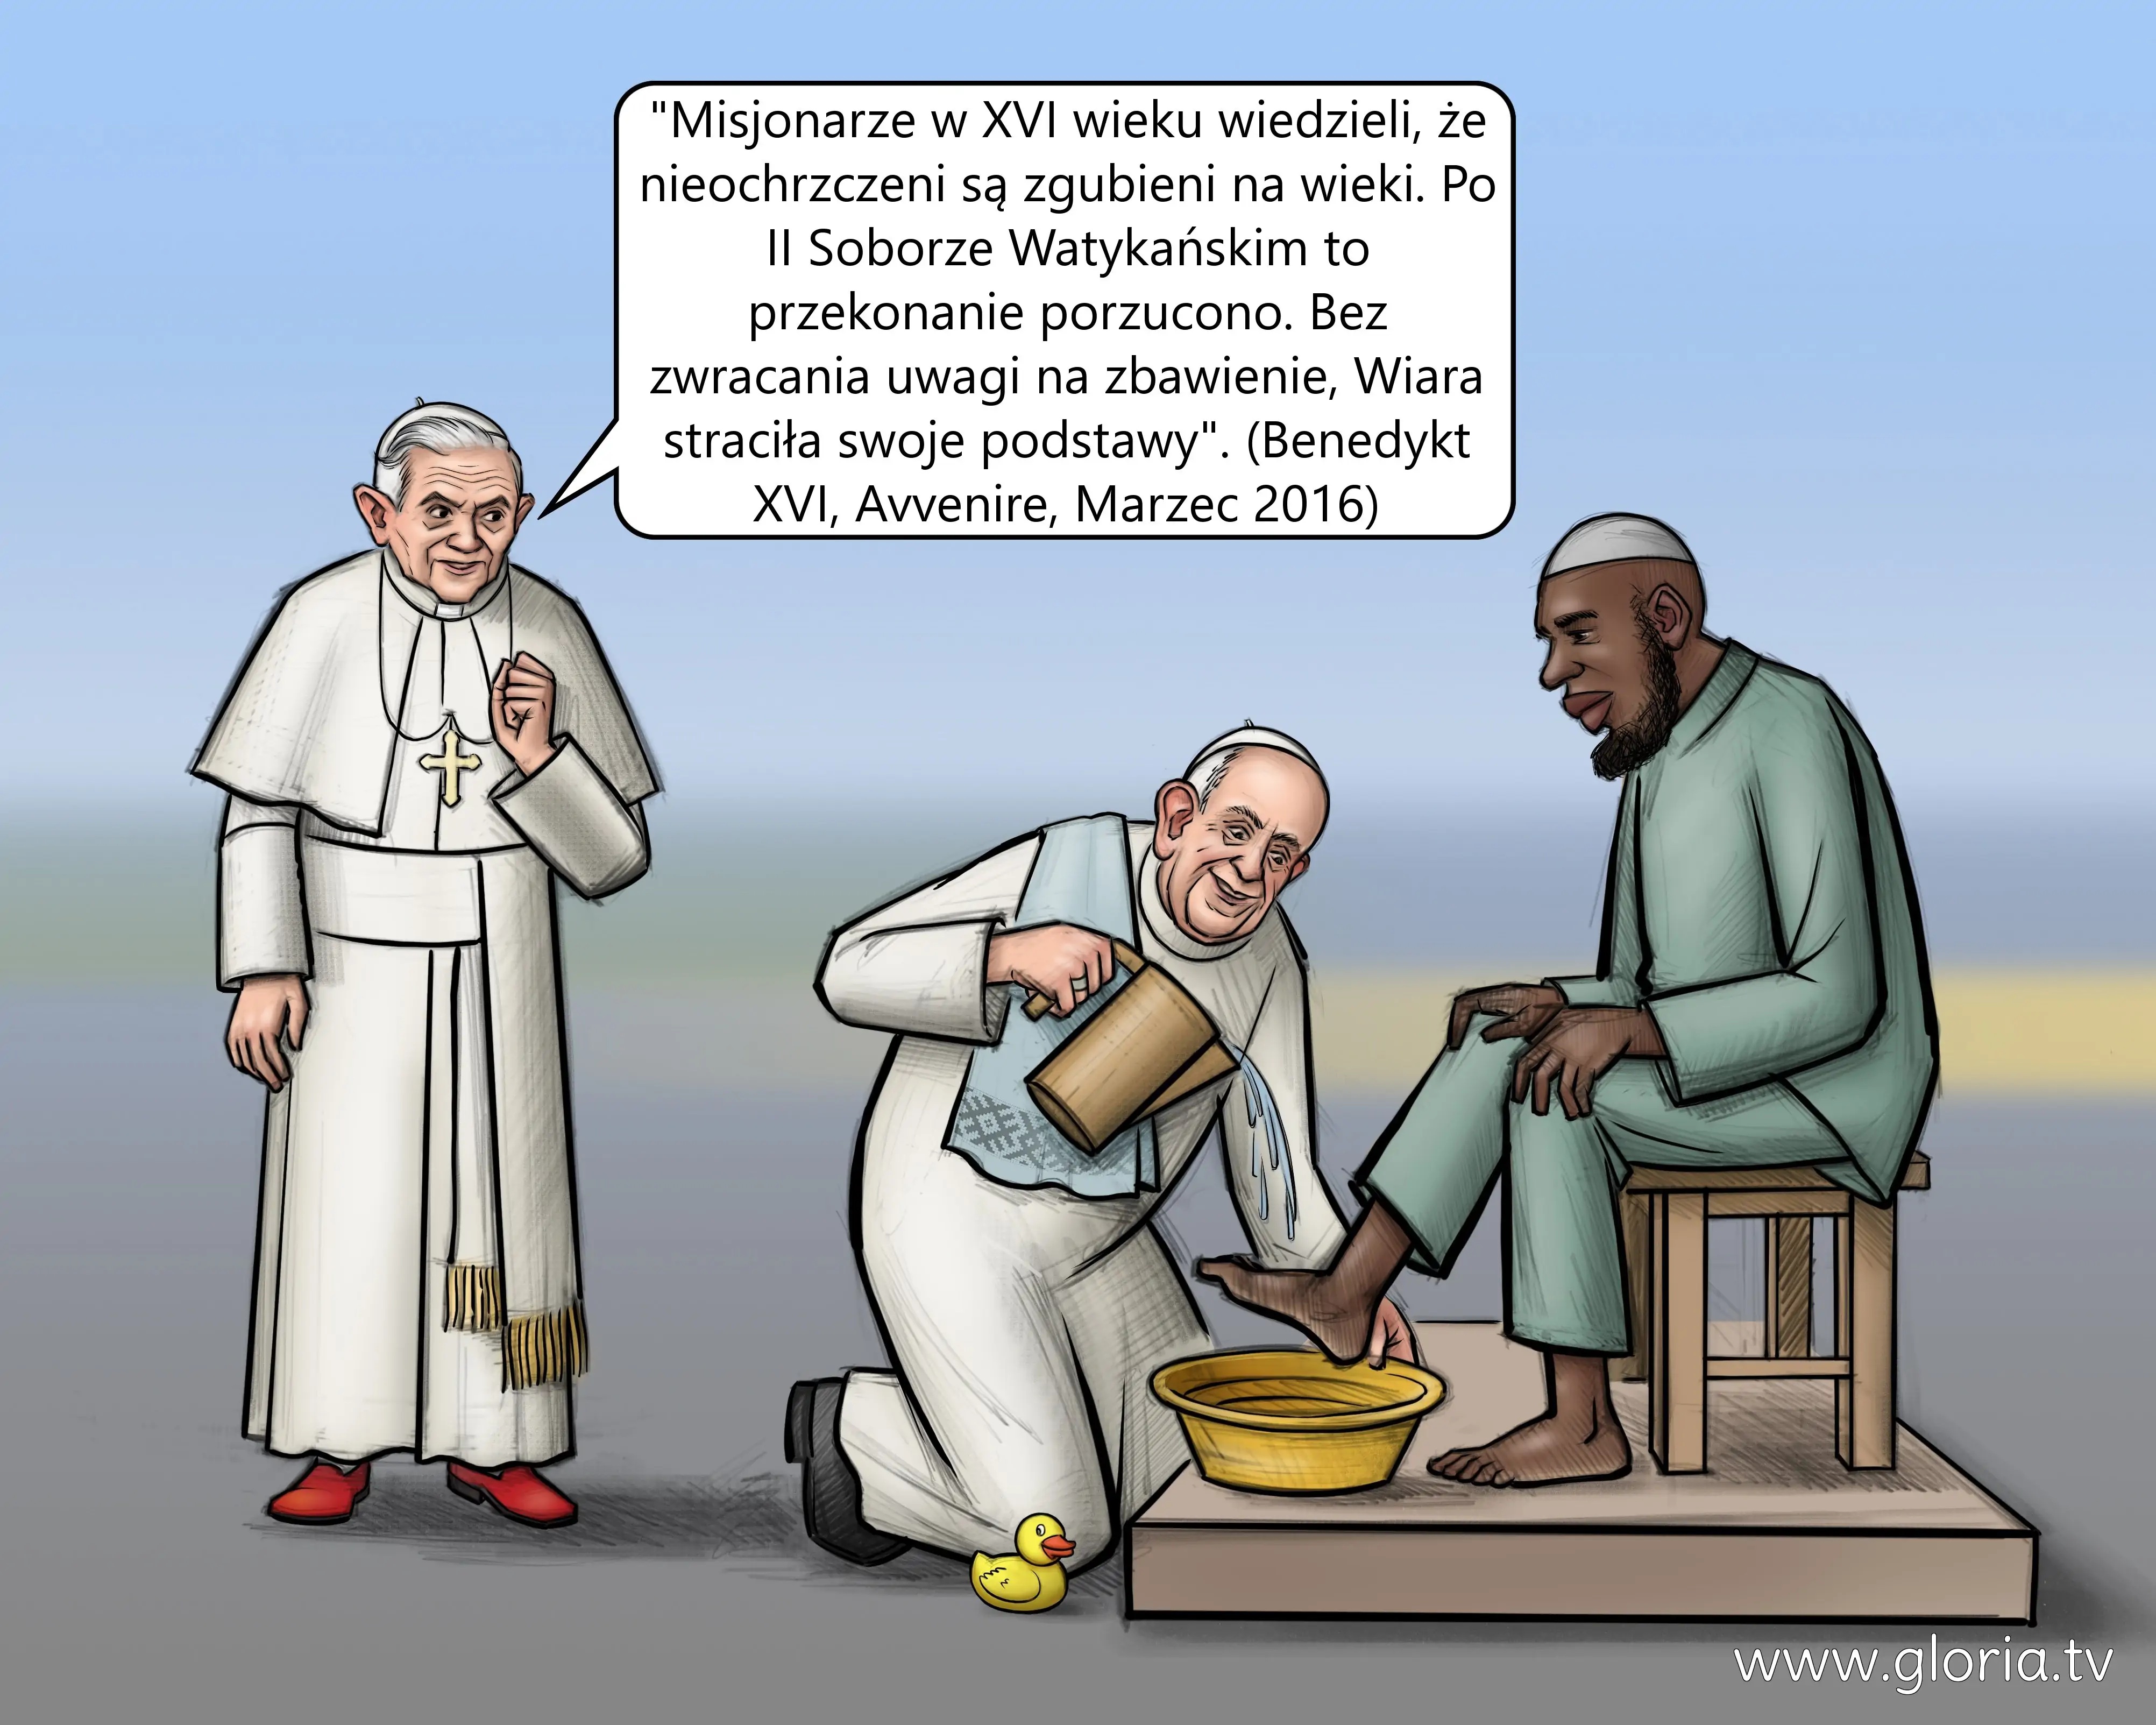 Pseudopapież apostata Bergoglio umywa nogi islamiście